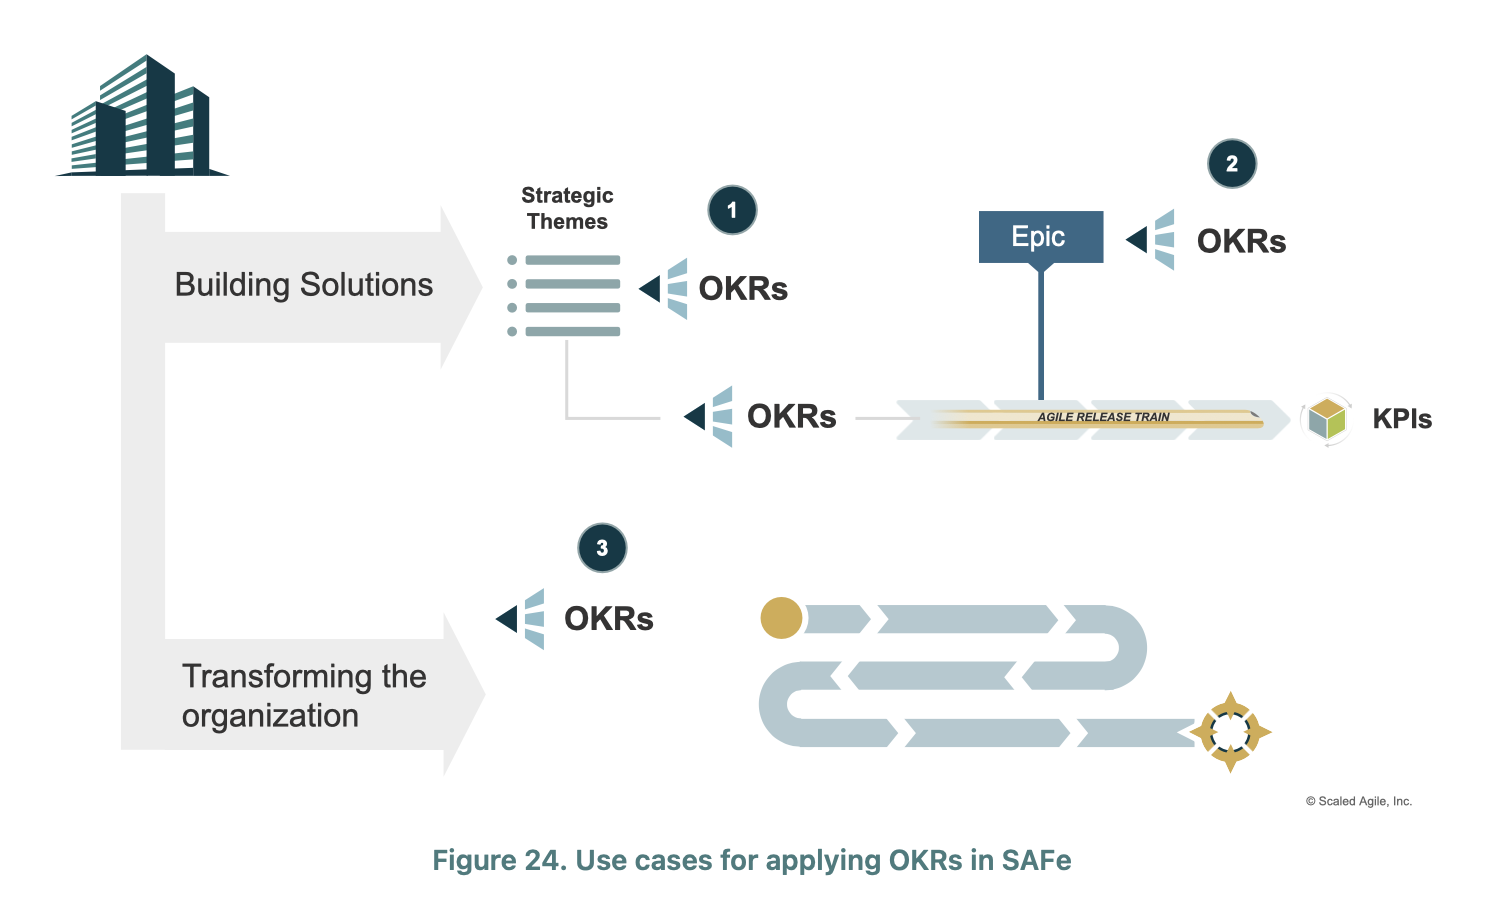 Représentation visuelle des OKRs dans le contexte de SAFe 6.0, mettant en lumière leur rôle crucial dans l'alignement stratégique et la mesure des performances au sein des équipes agiles.